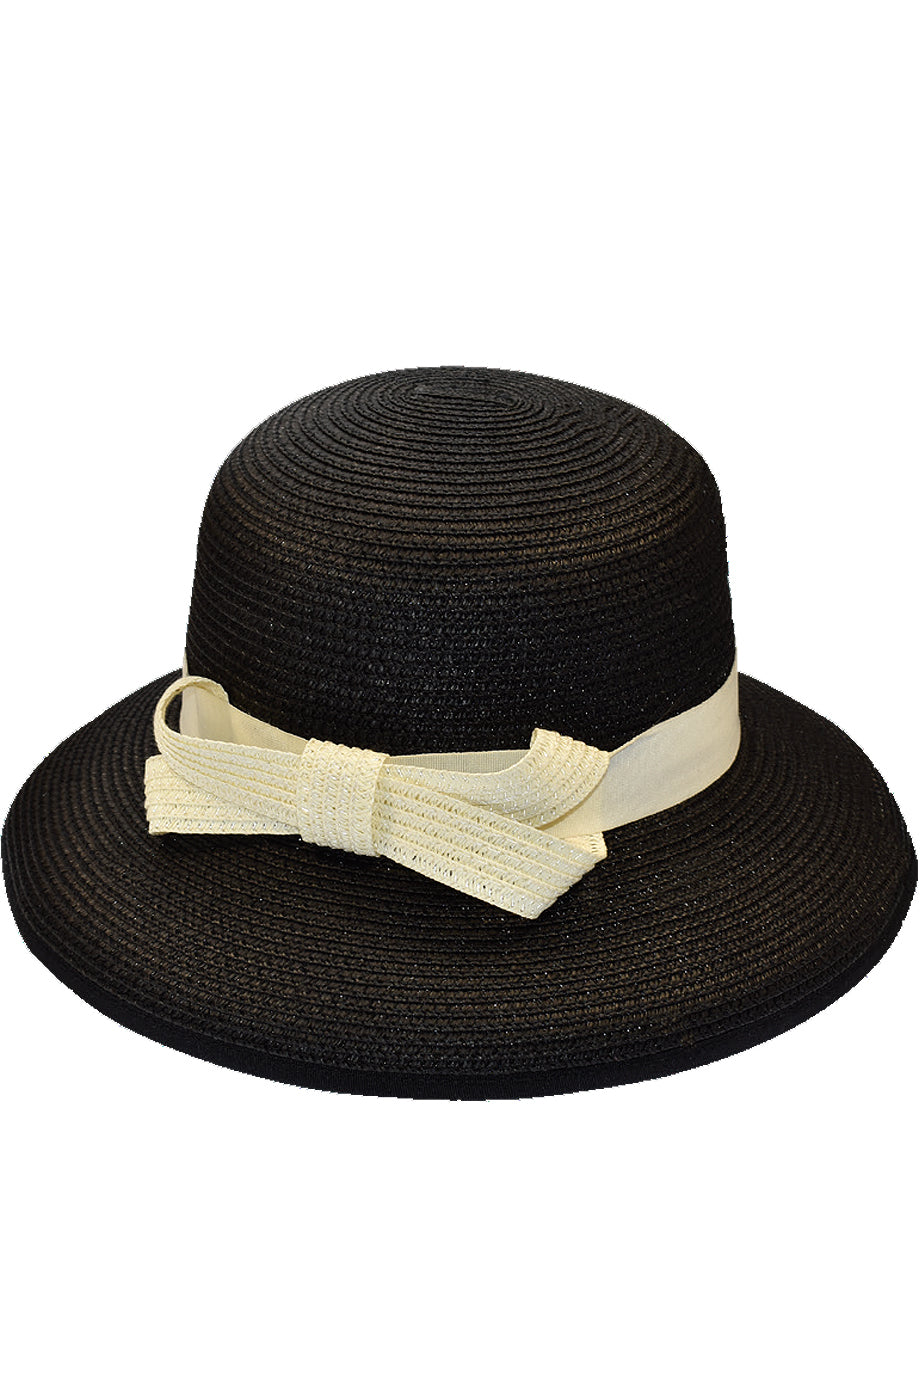 Μαύρο Ψάθινο Καπέλο | Γυναικεία Καπέλα Παραλίας - Elodie